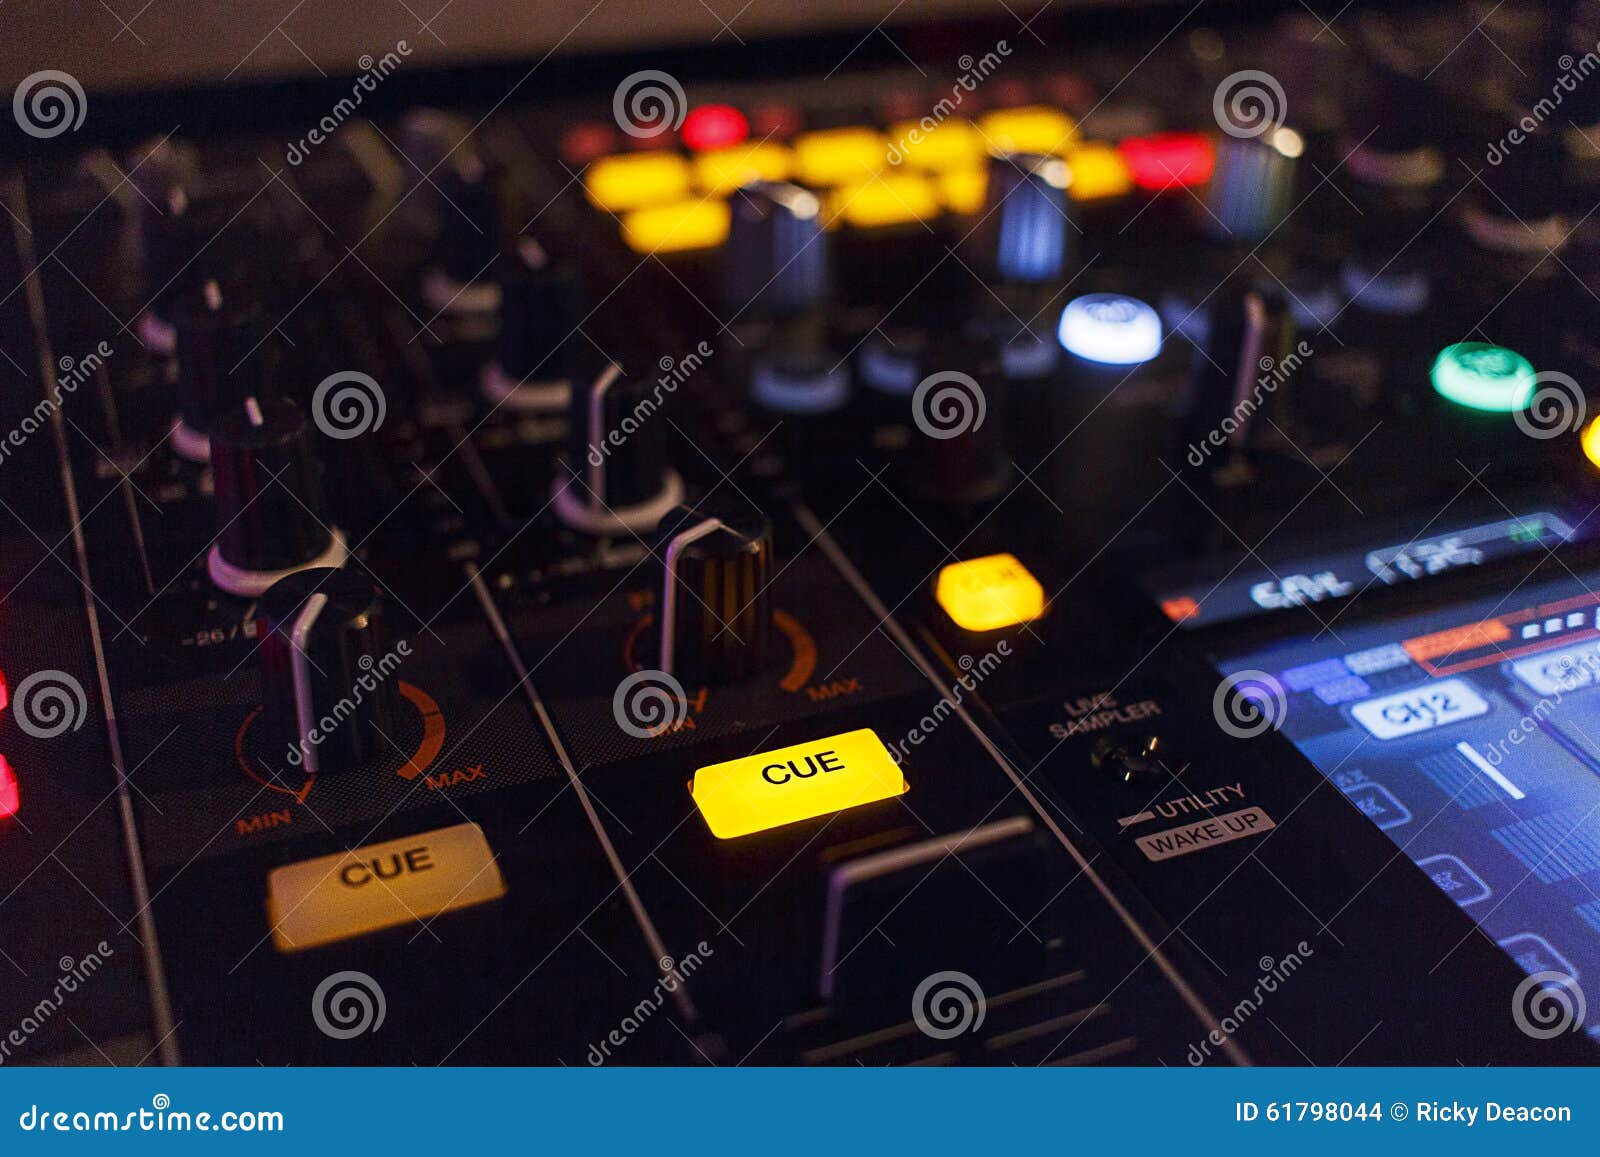 mixing music / dj mixer